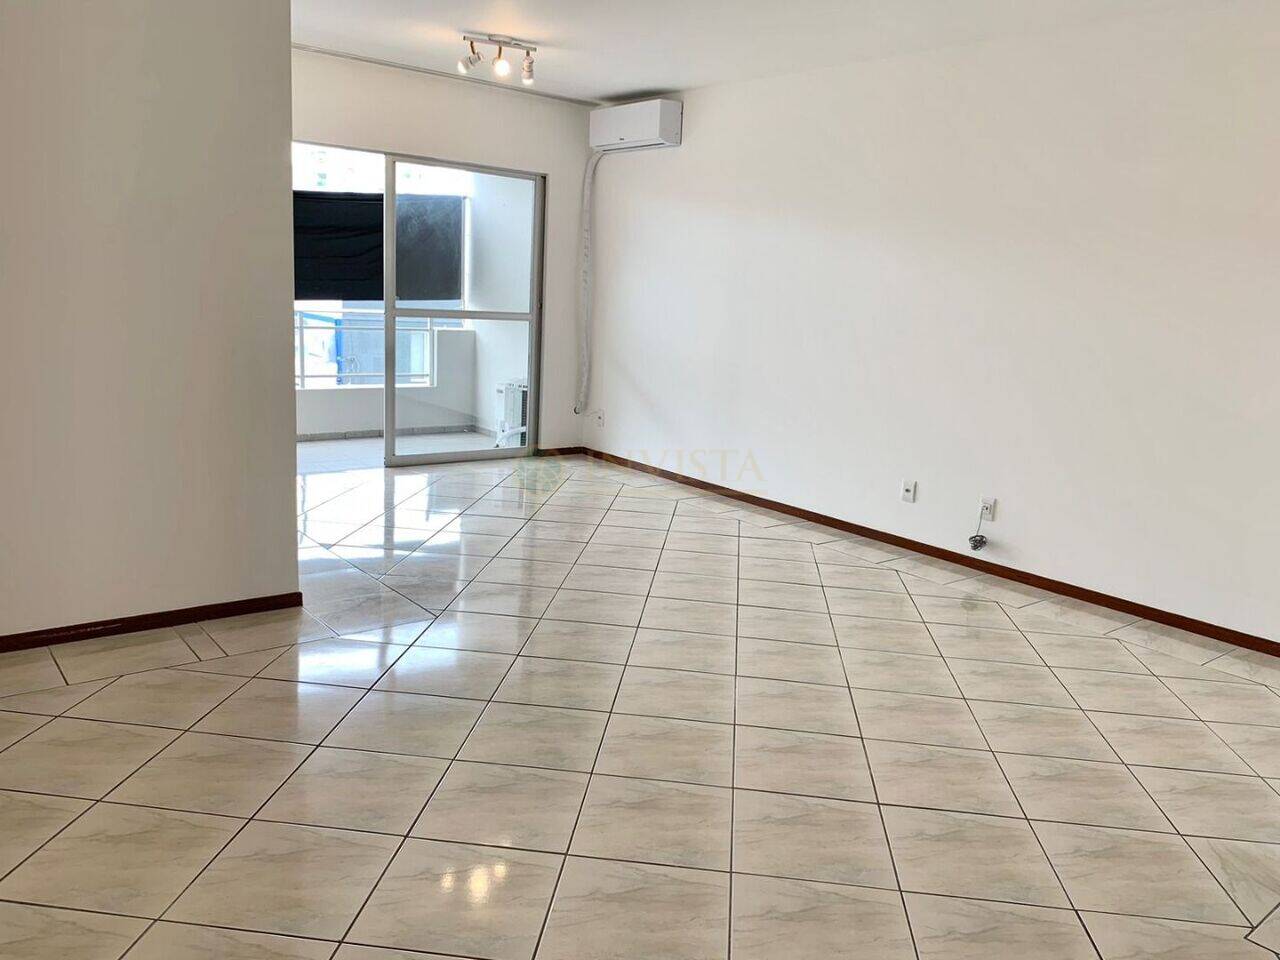 Apartamento Balneário, Florianópolis - SC